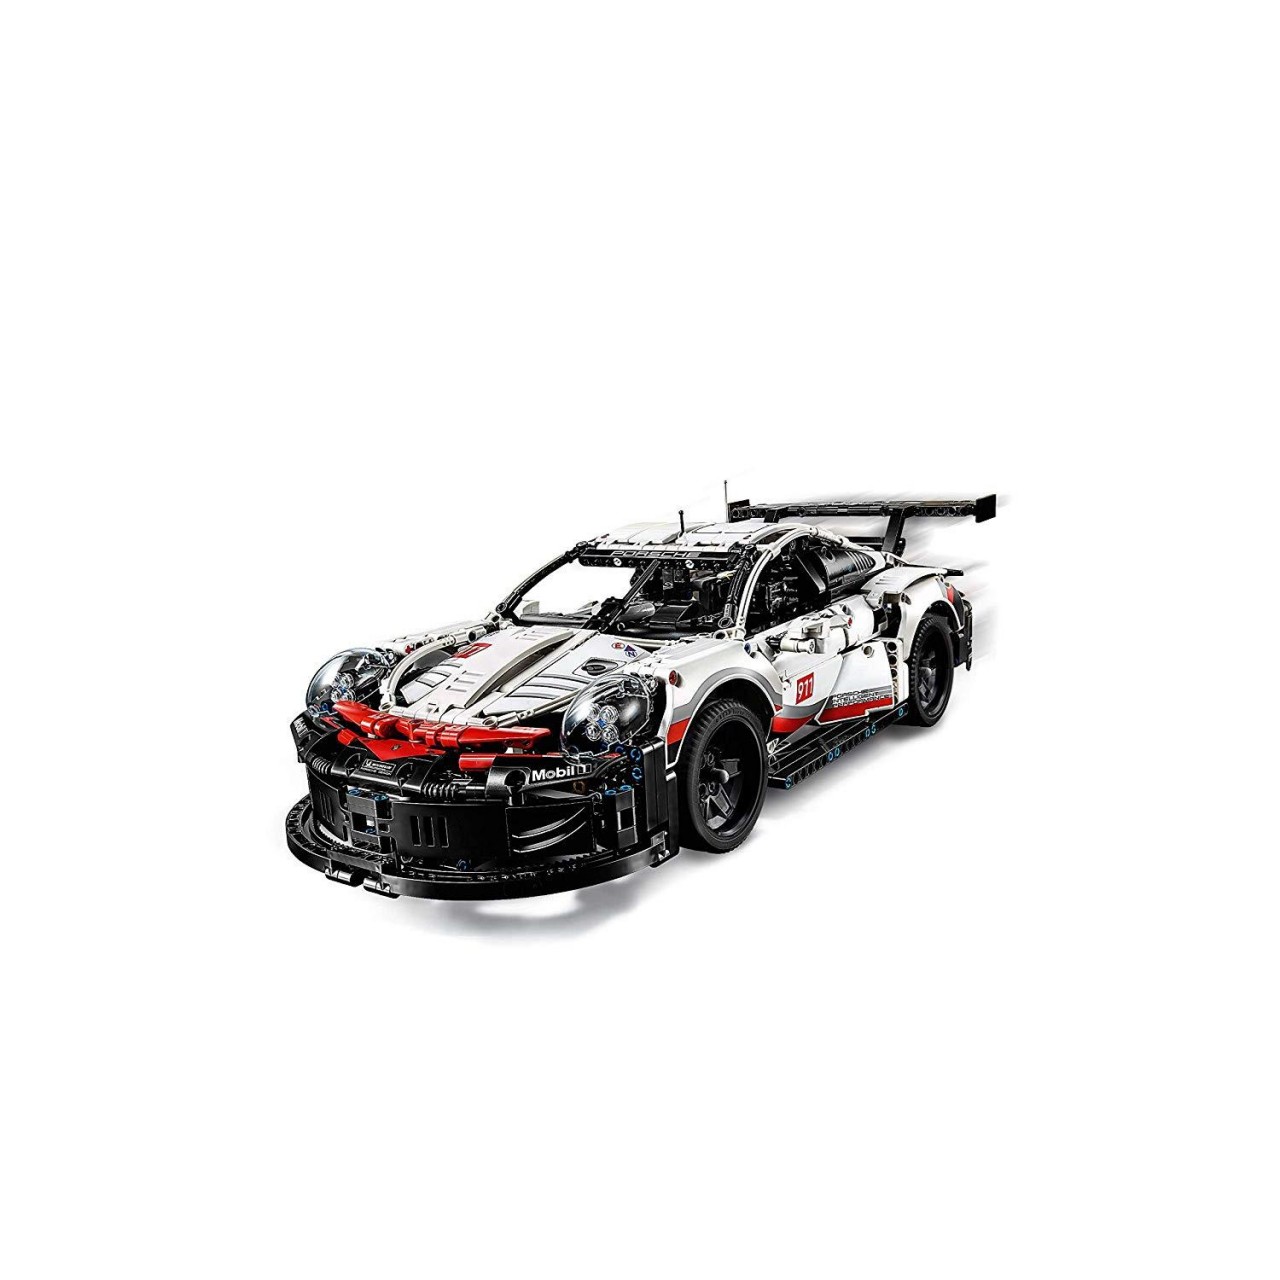 LEGO TECHNIC 42096 Porsche 911 RSR